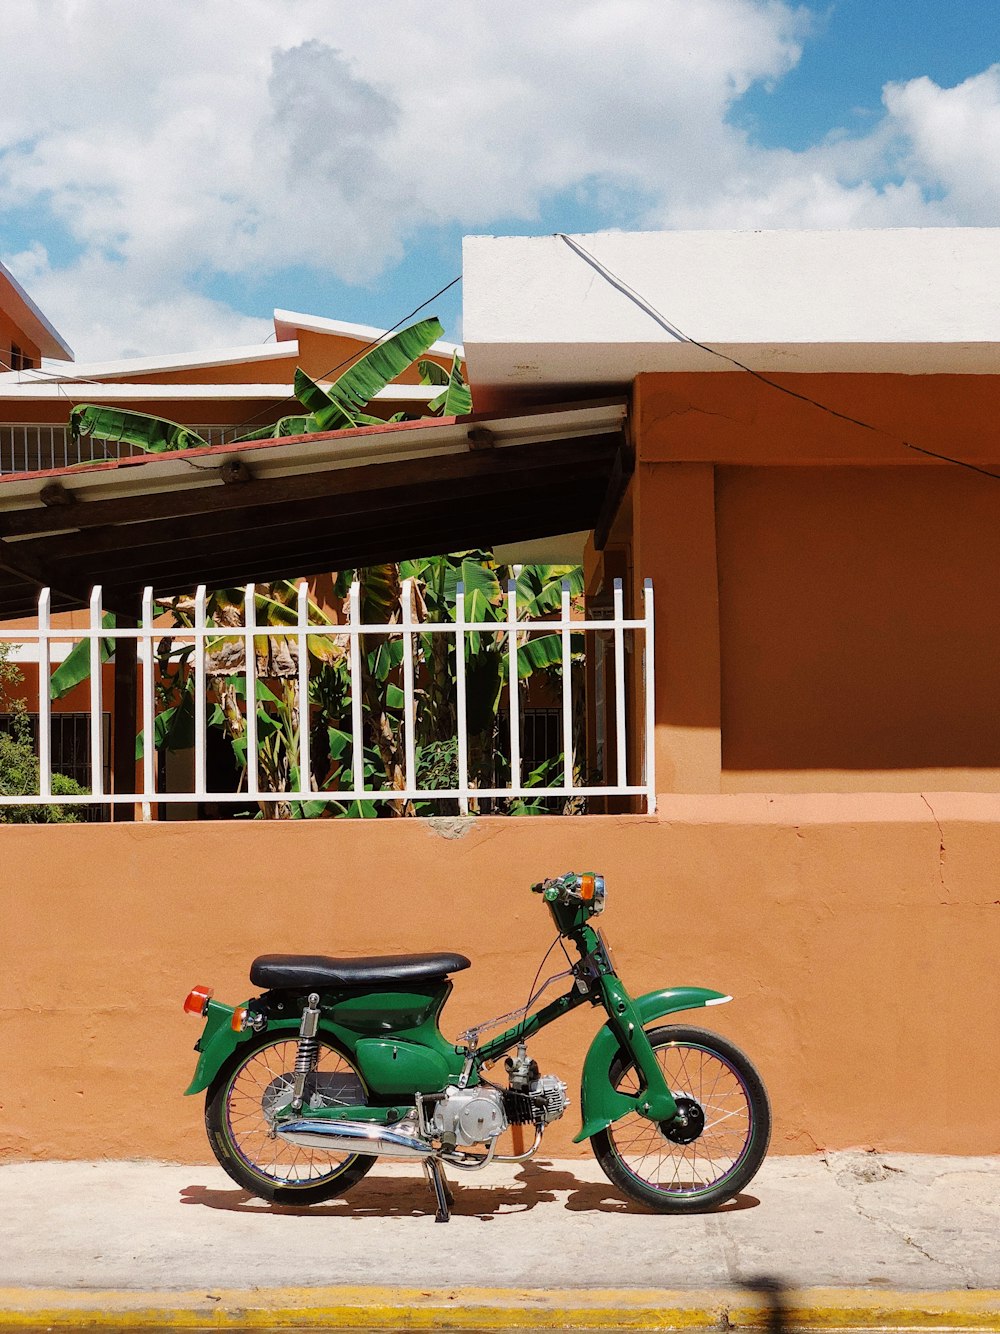 motocicleta verde e preta estacionada ao lado do edifício de concreto marrom durante o dia